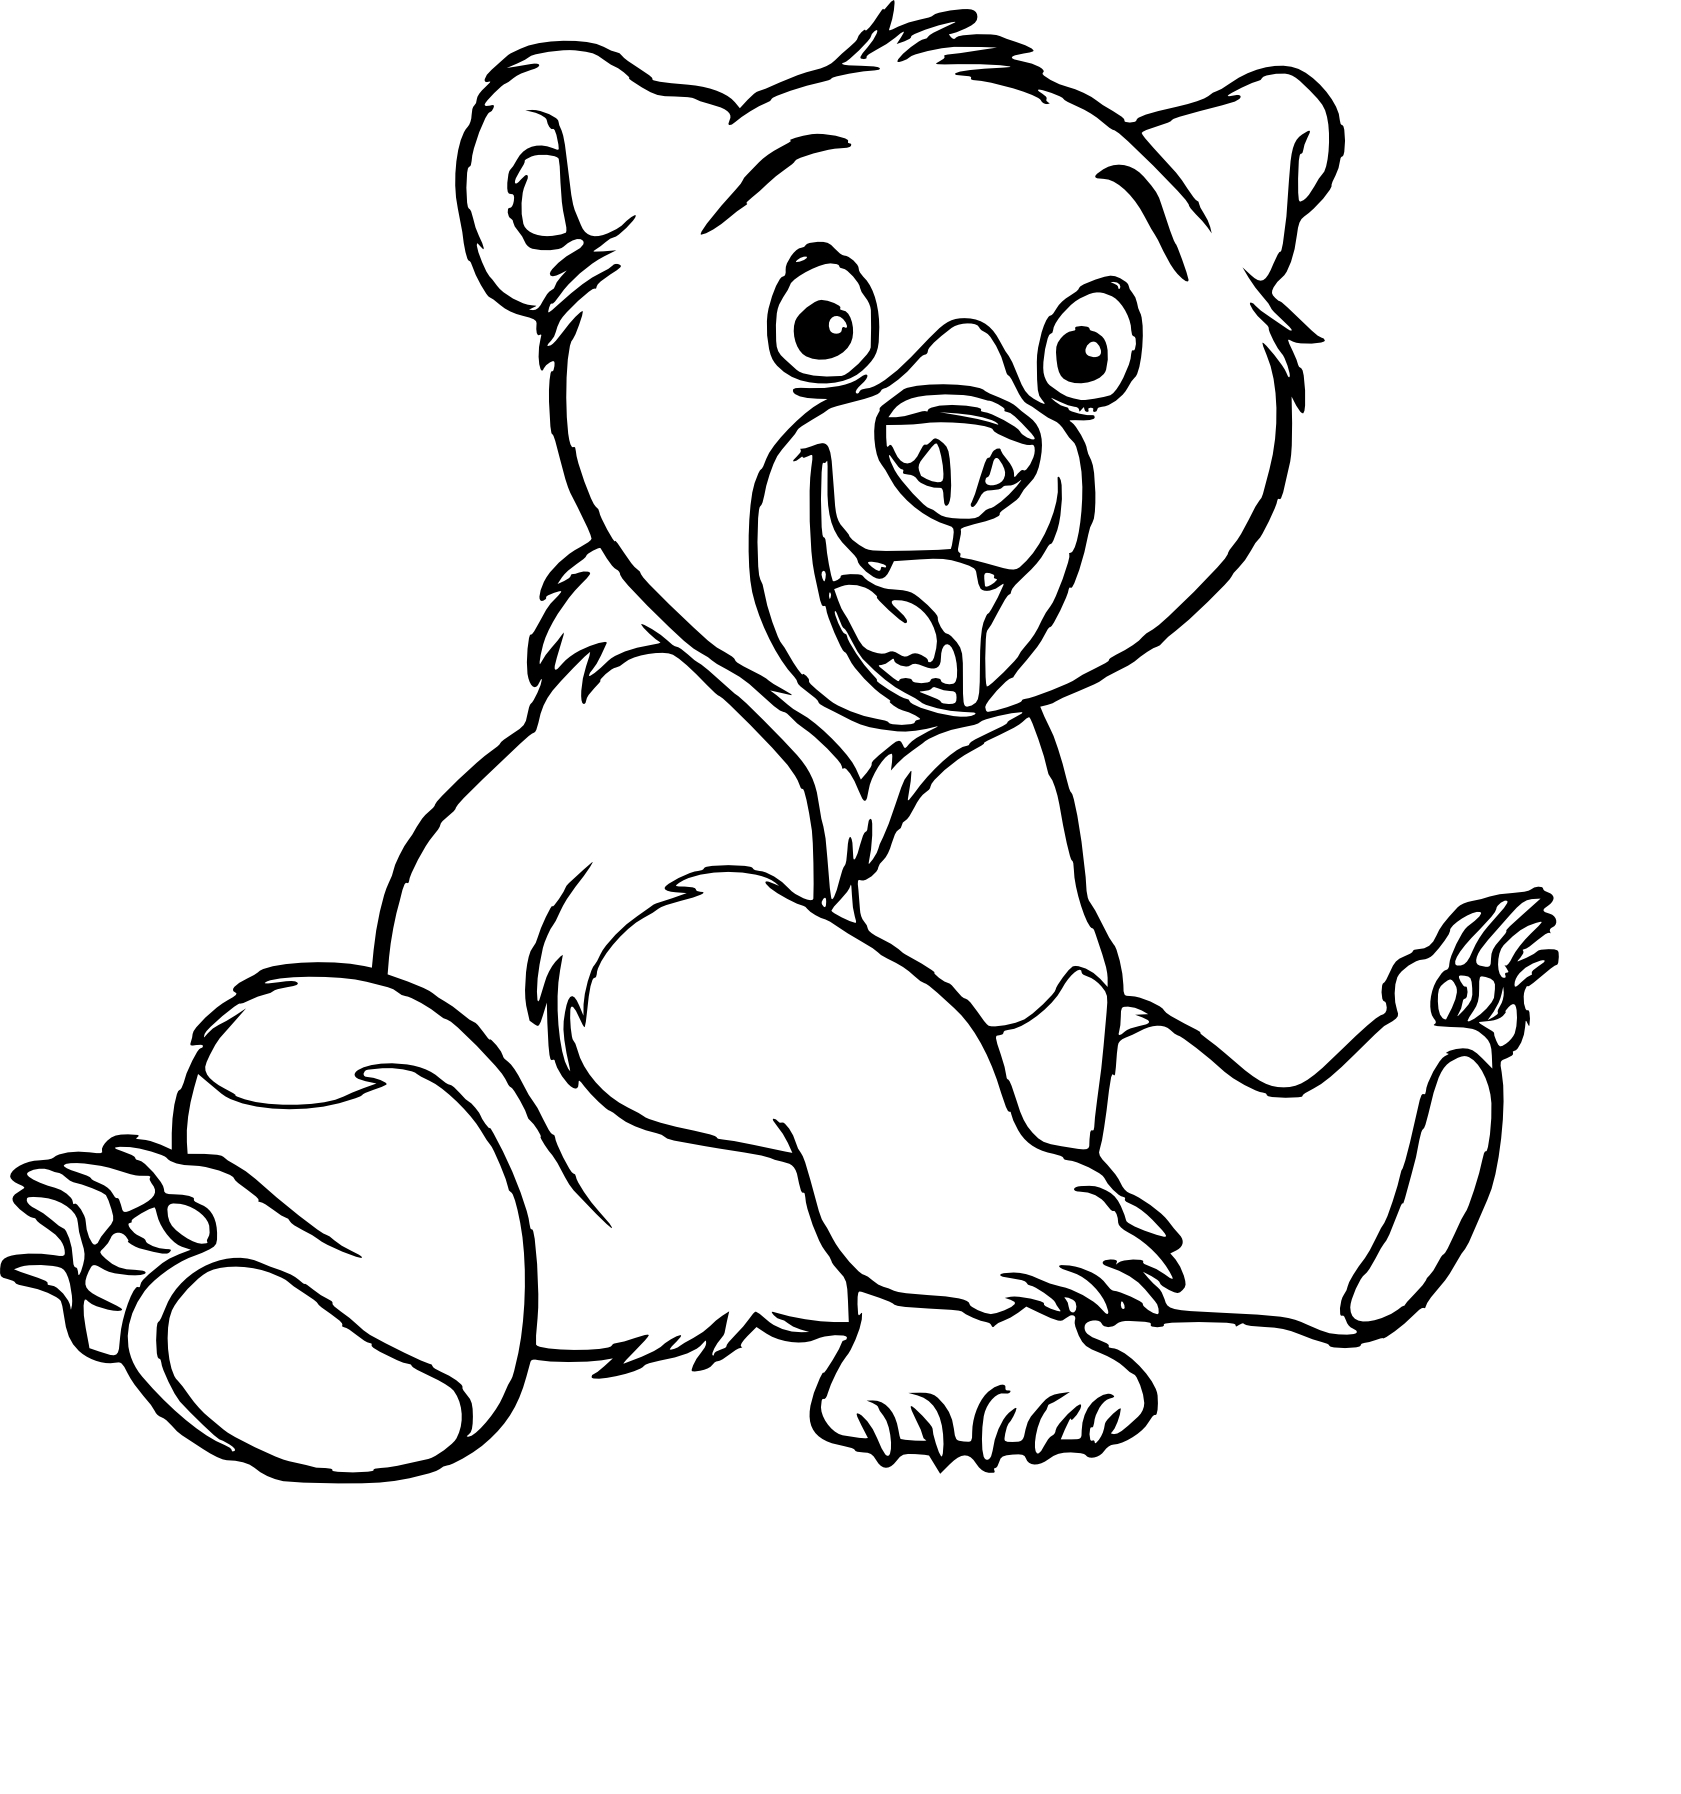 Disegno di Koda fratello degli orsi da colorare